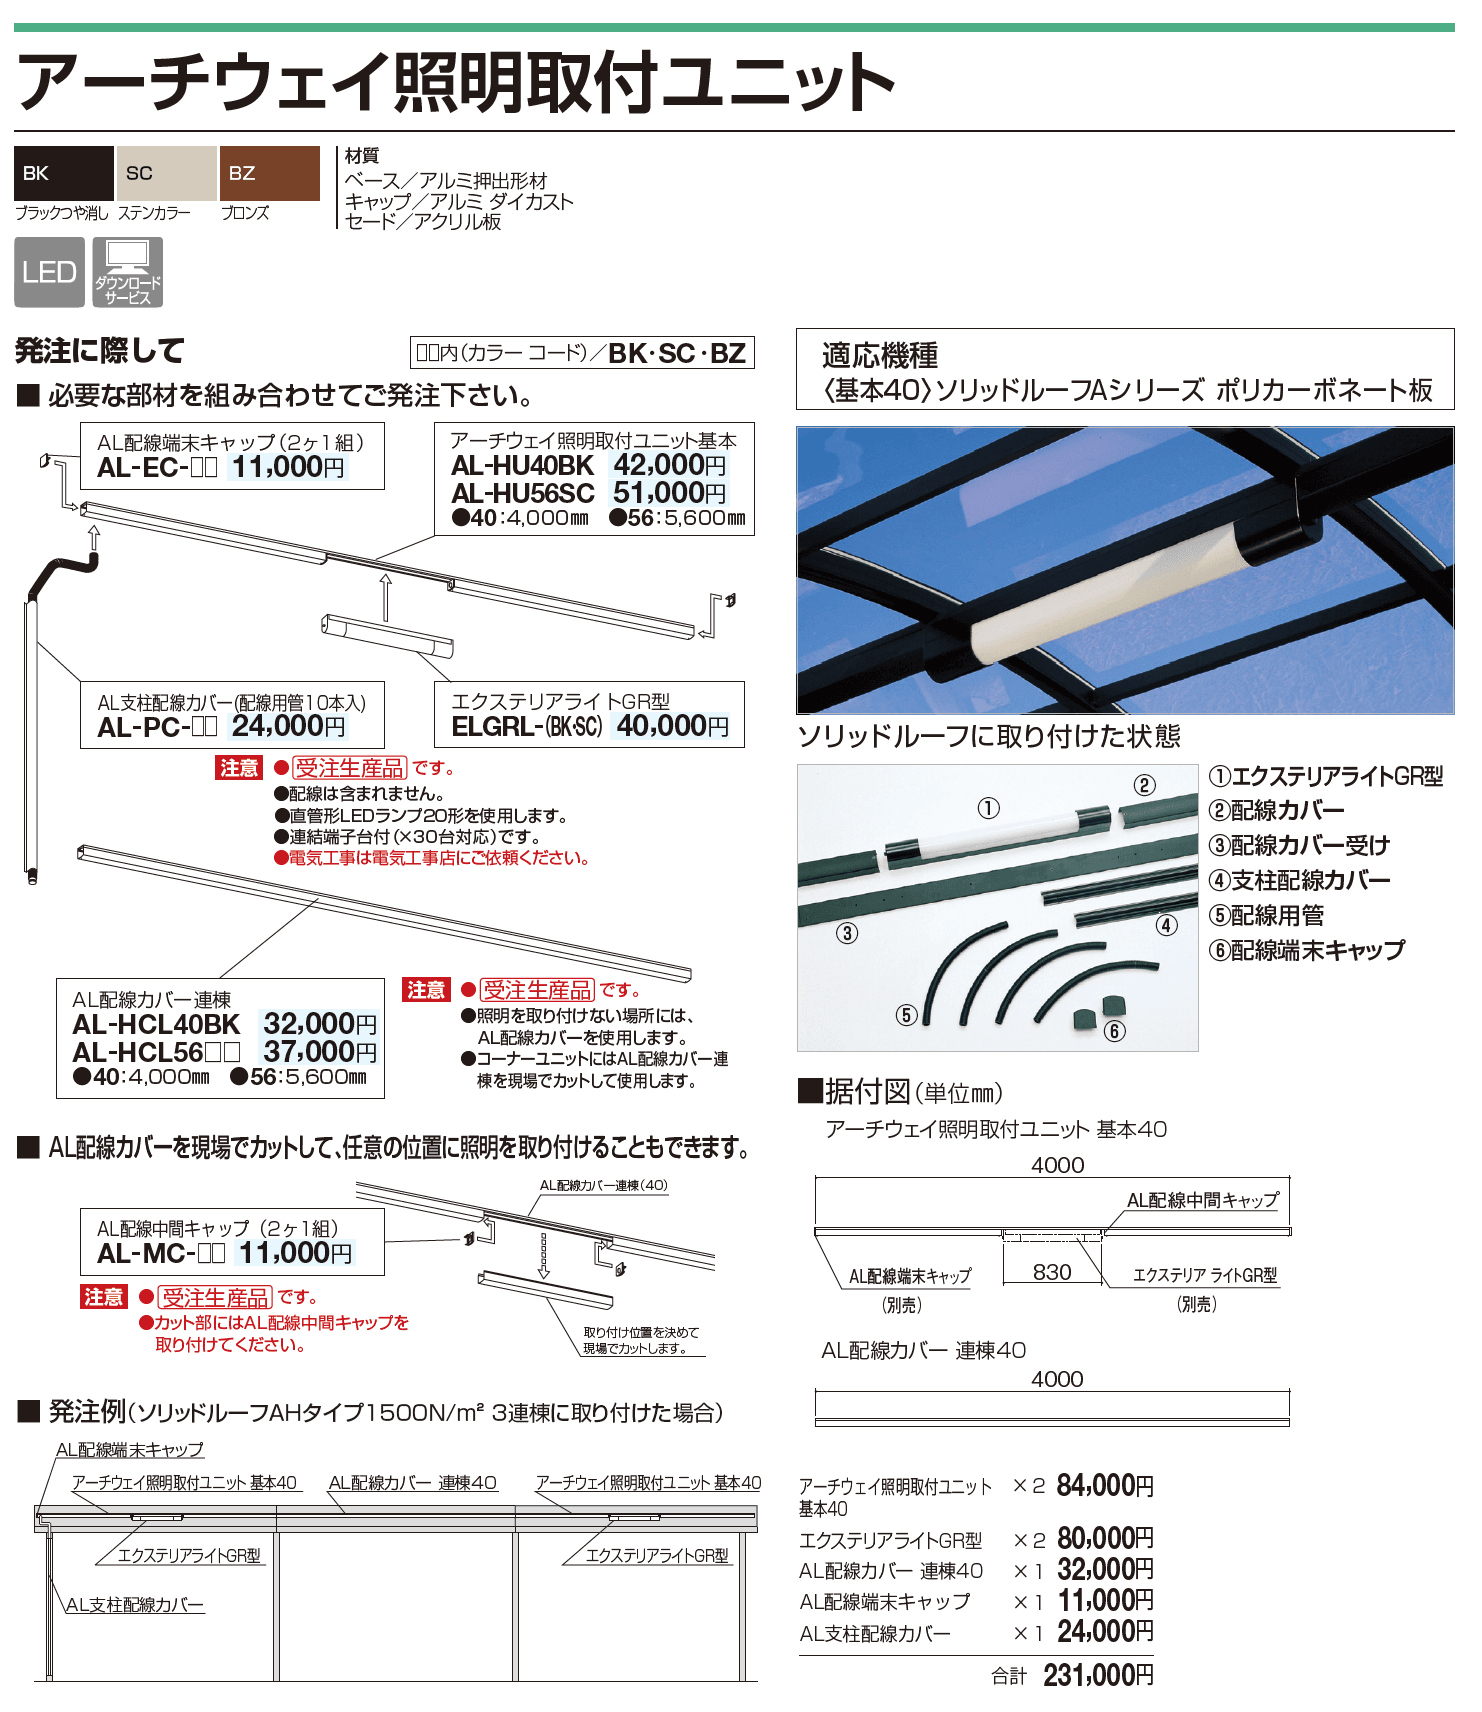 四国化成 ・アーチウェイ照明取付ユニット1